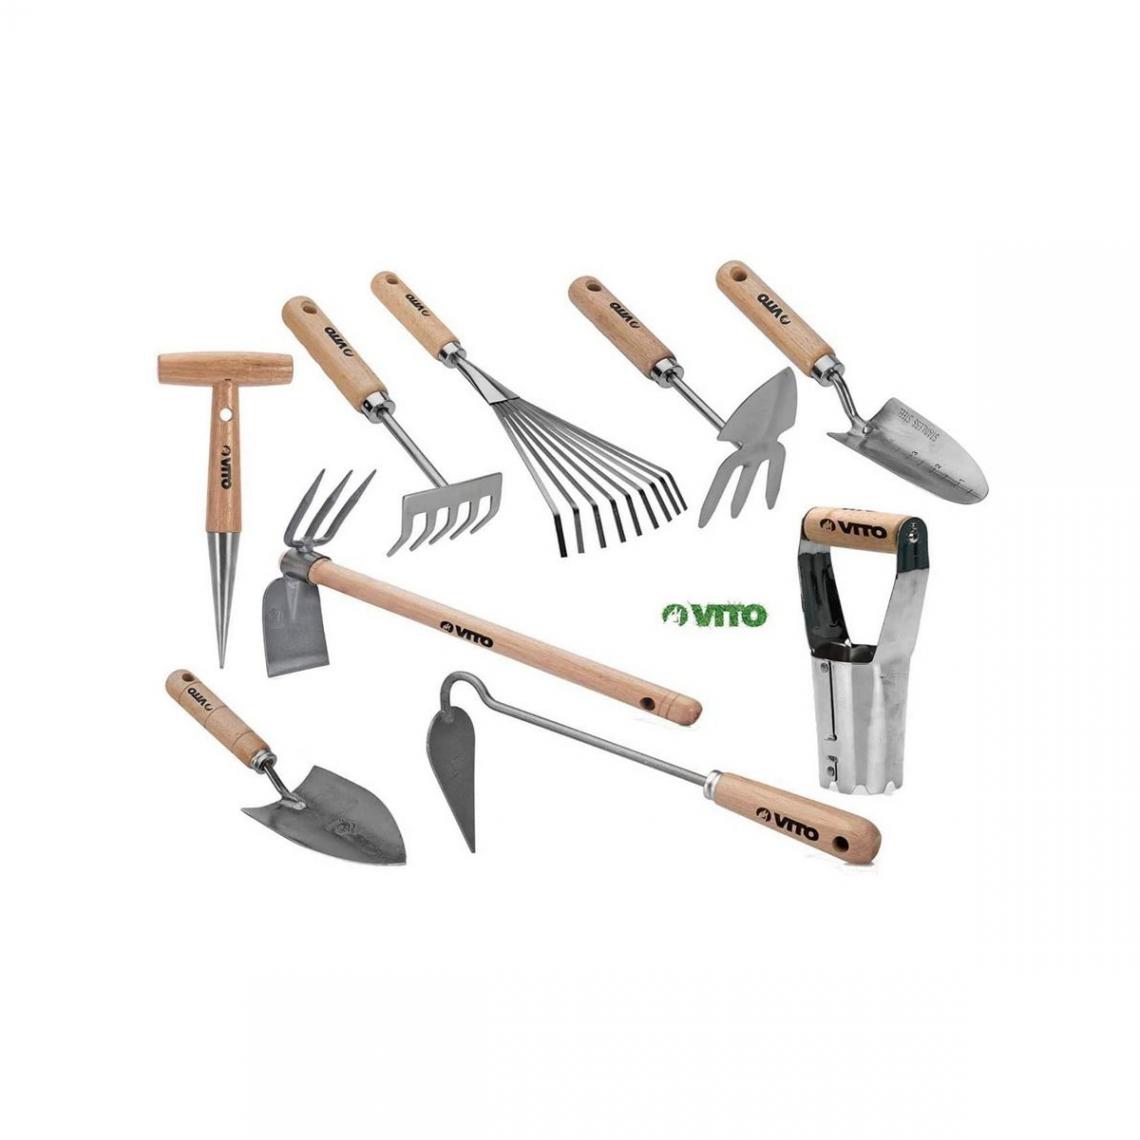 Vito Garden - Kit 9 outils de jardin Manche bois VITOGARDEN Inox et Fer forgés à la main haute qualité Outils de jardin - Bêches, fourches, louchets, houes